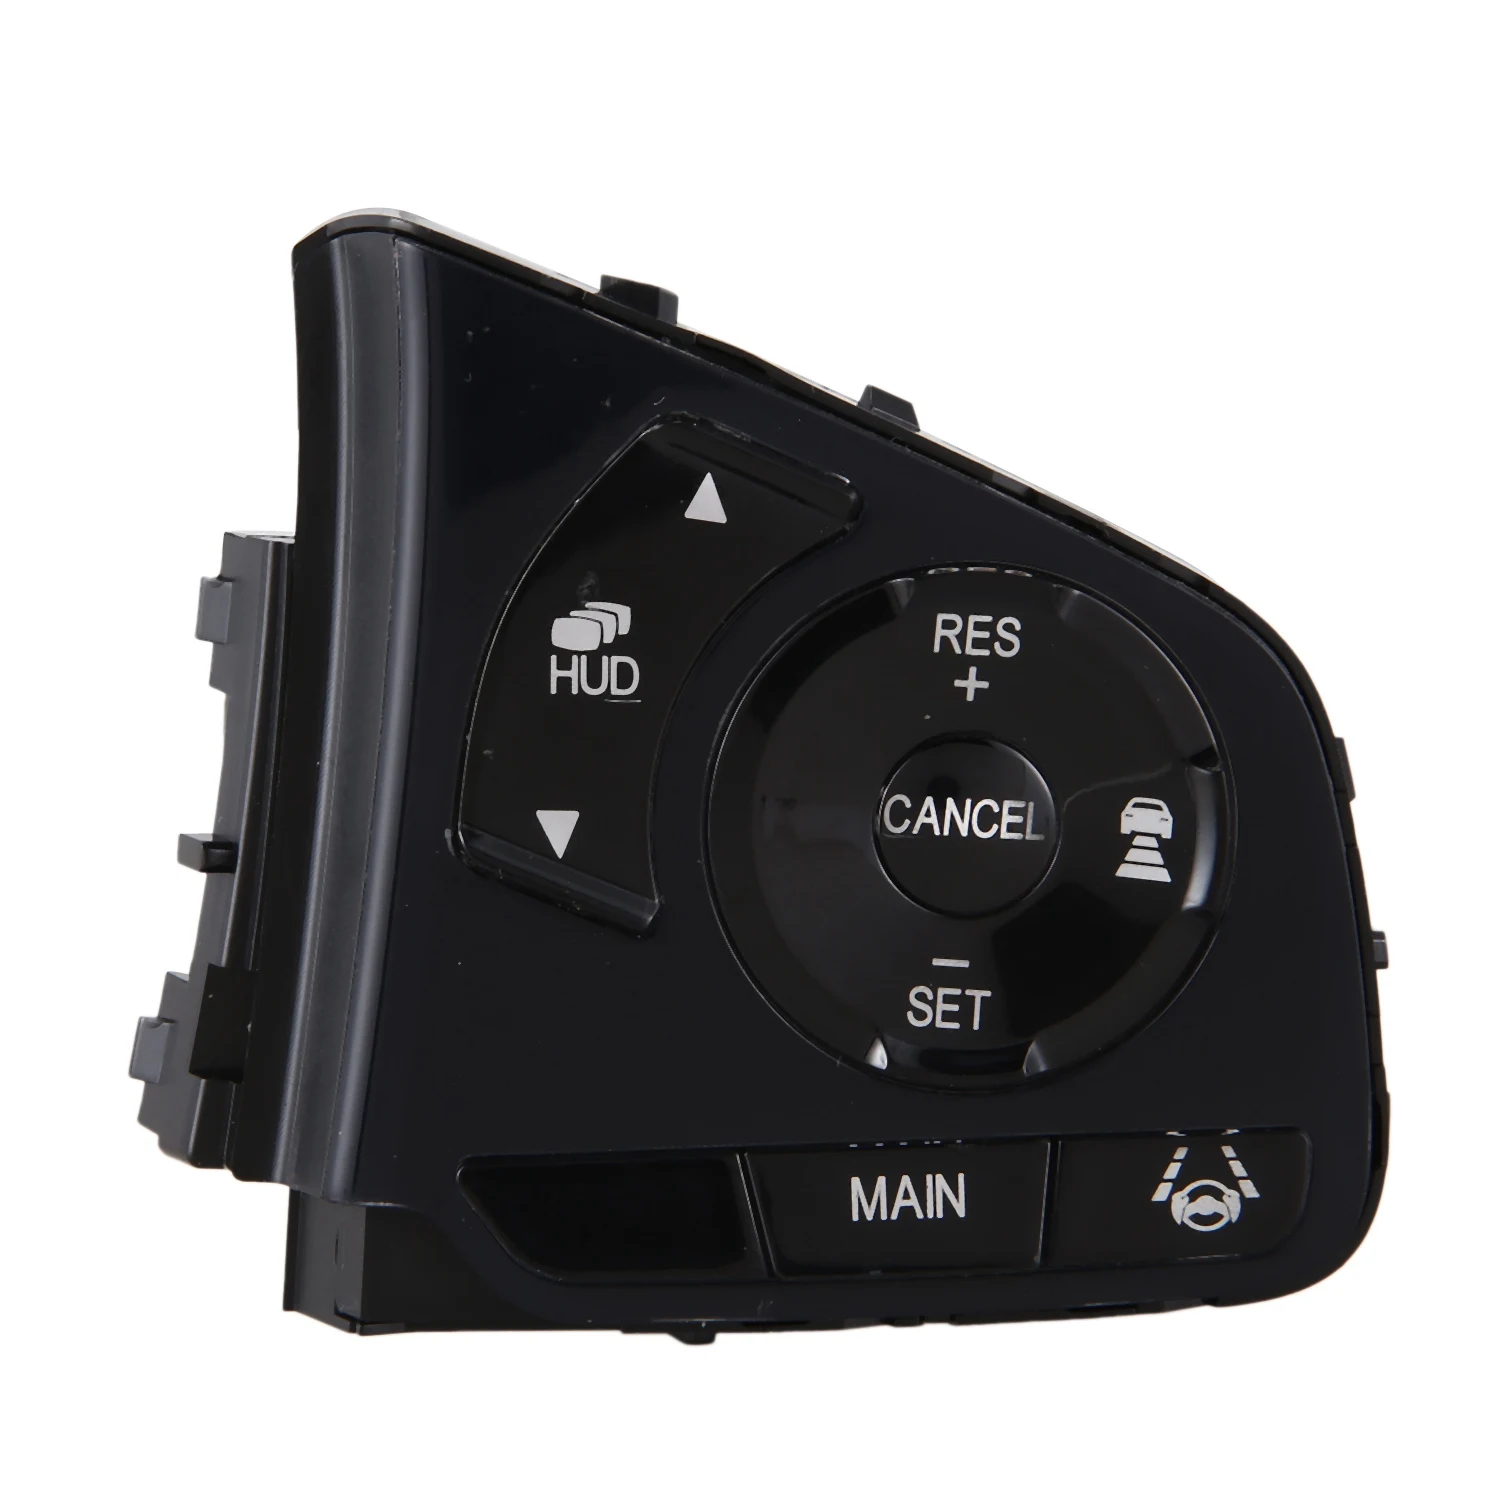 

Автомобильный круиз-контроль объемный канал дистанционное управление рулевым колесом для Honda Civic Тип R прототип